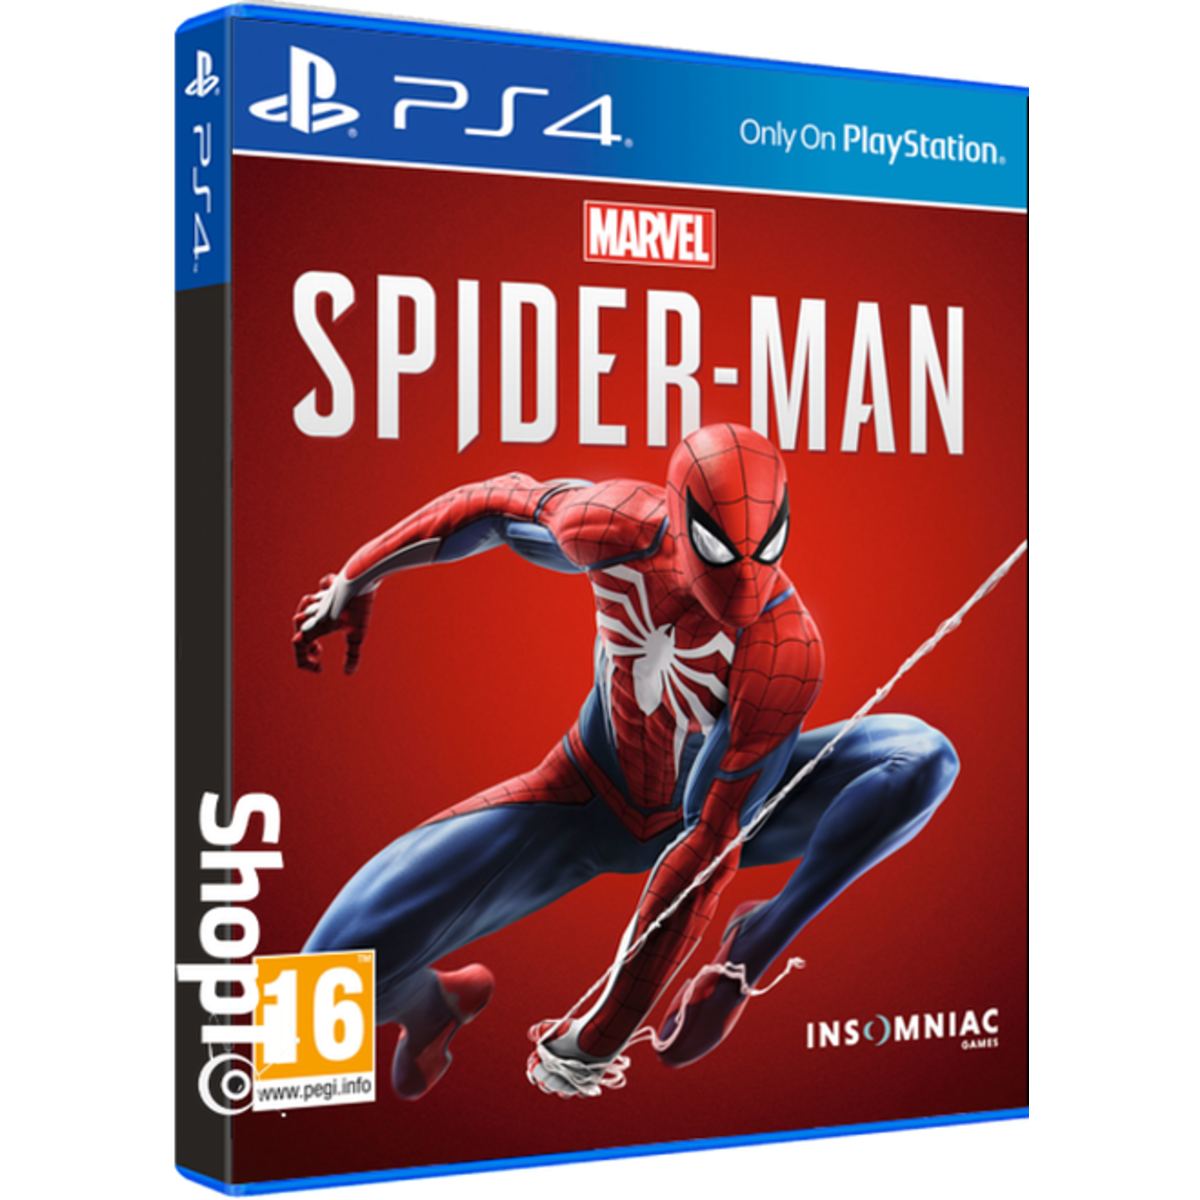 spiderman ps4 deals